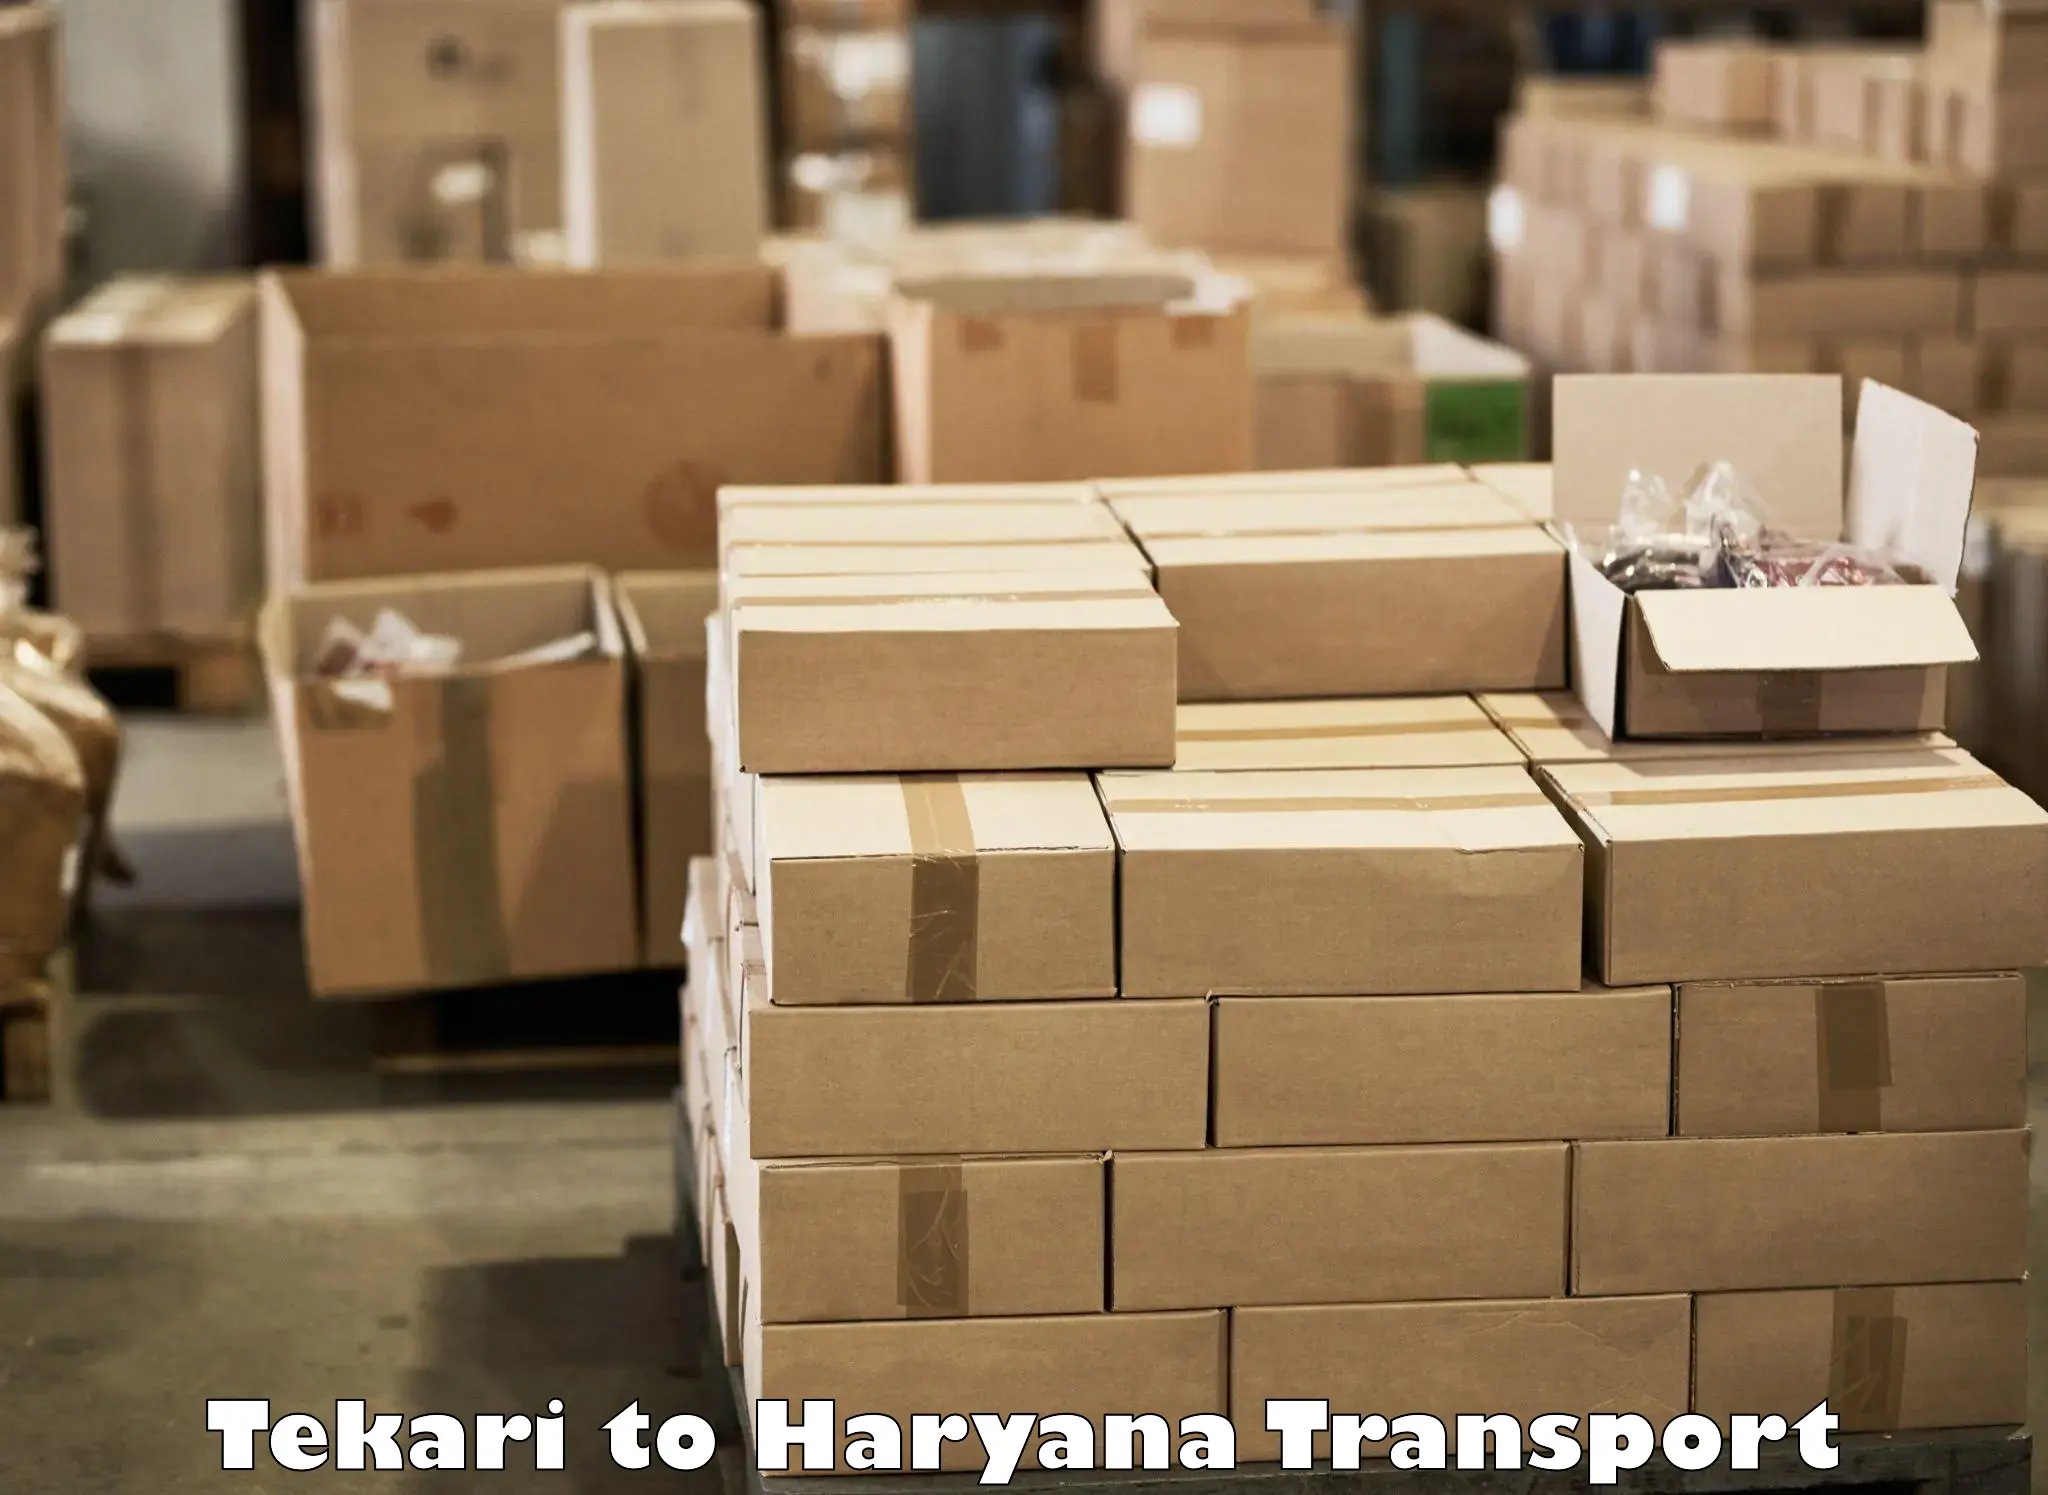 Cargo train transport services Tekari to Yamuna Nagar